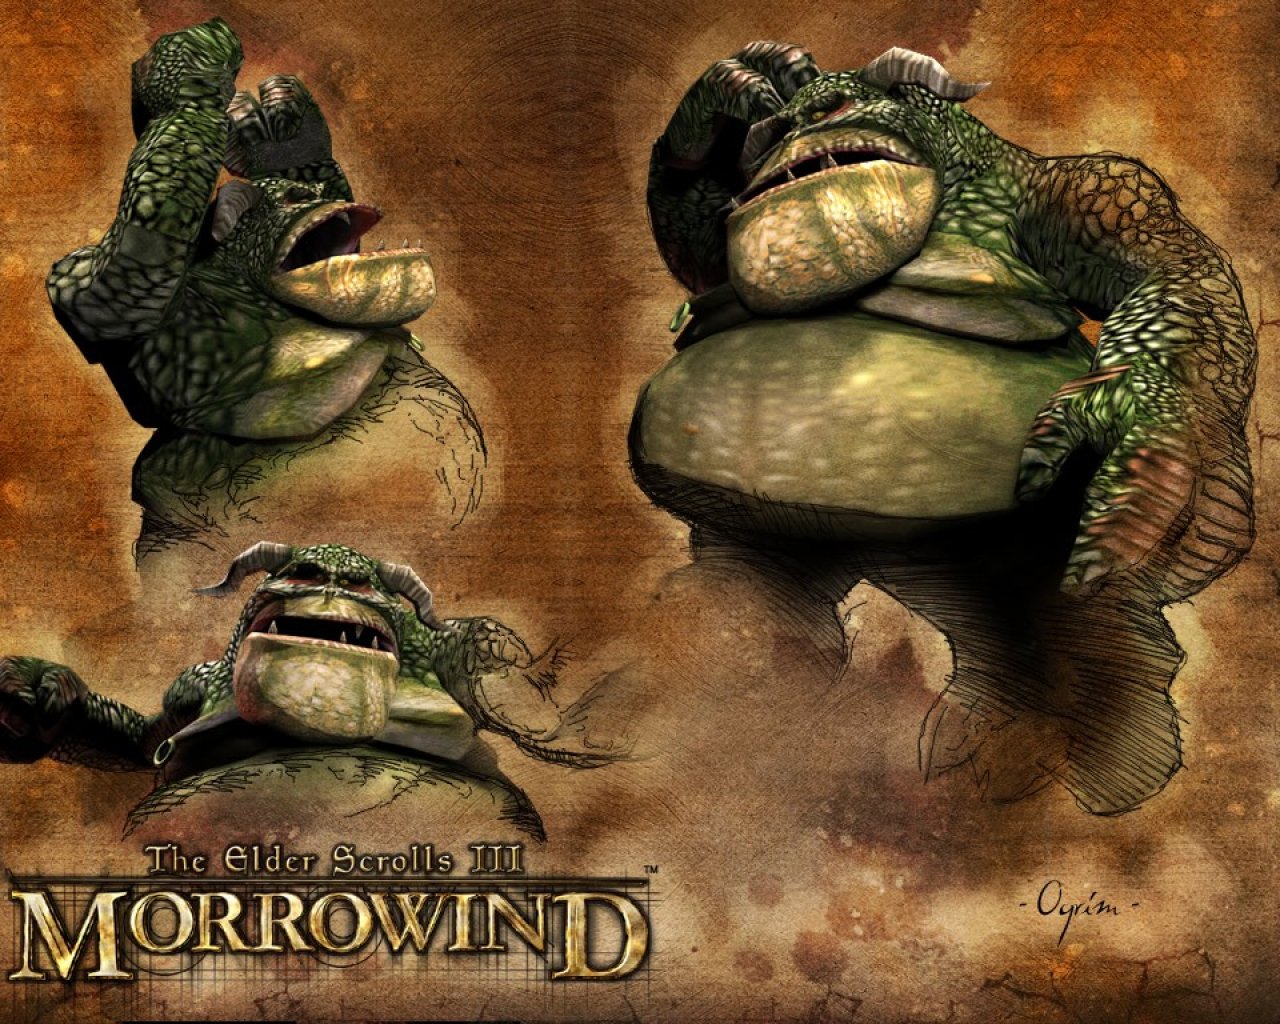 Wallpaper The Elder Scrolls III: Morrowind "Ogrim"